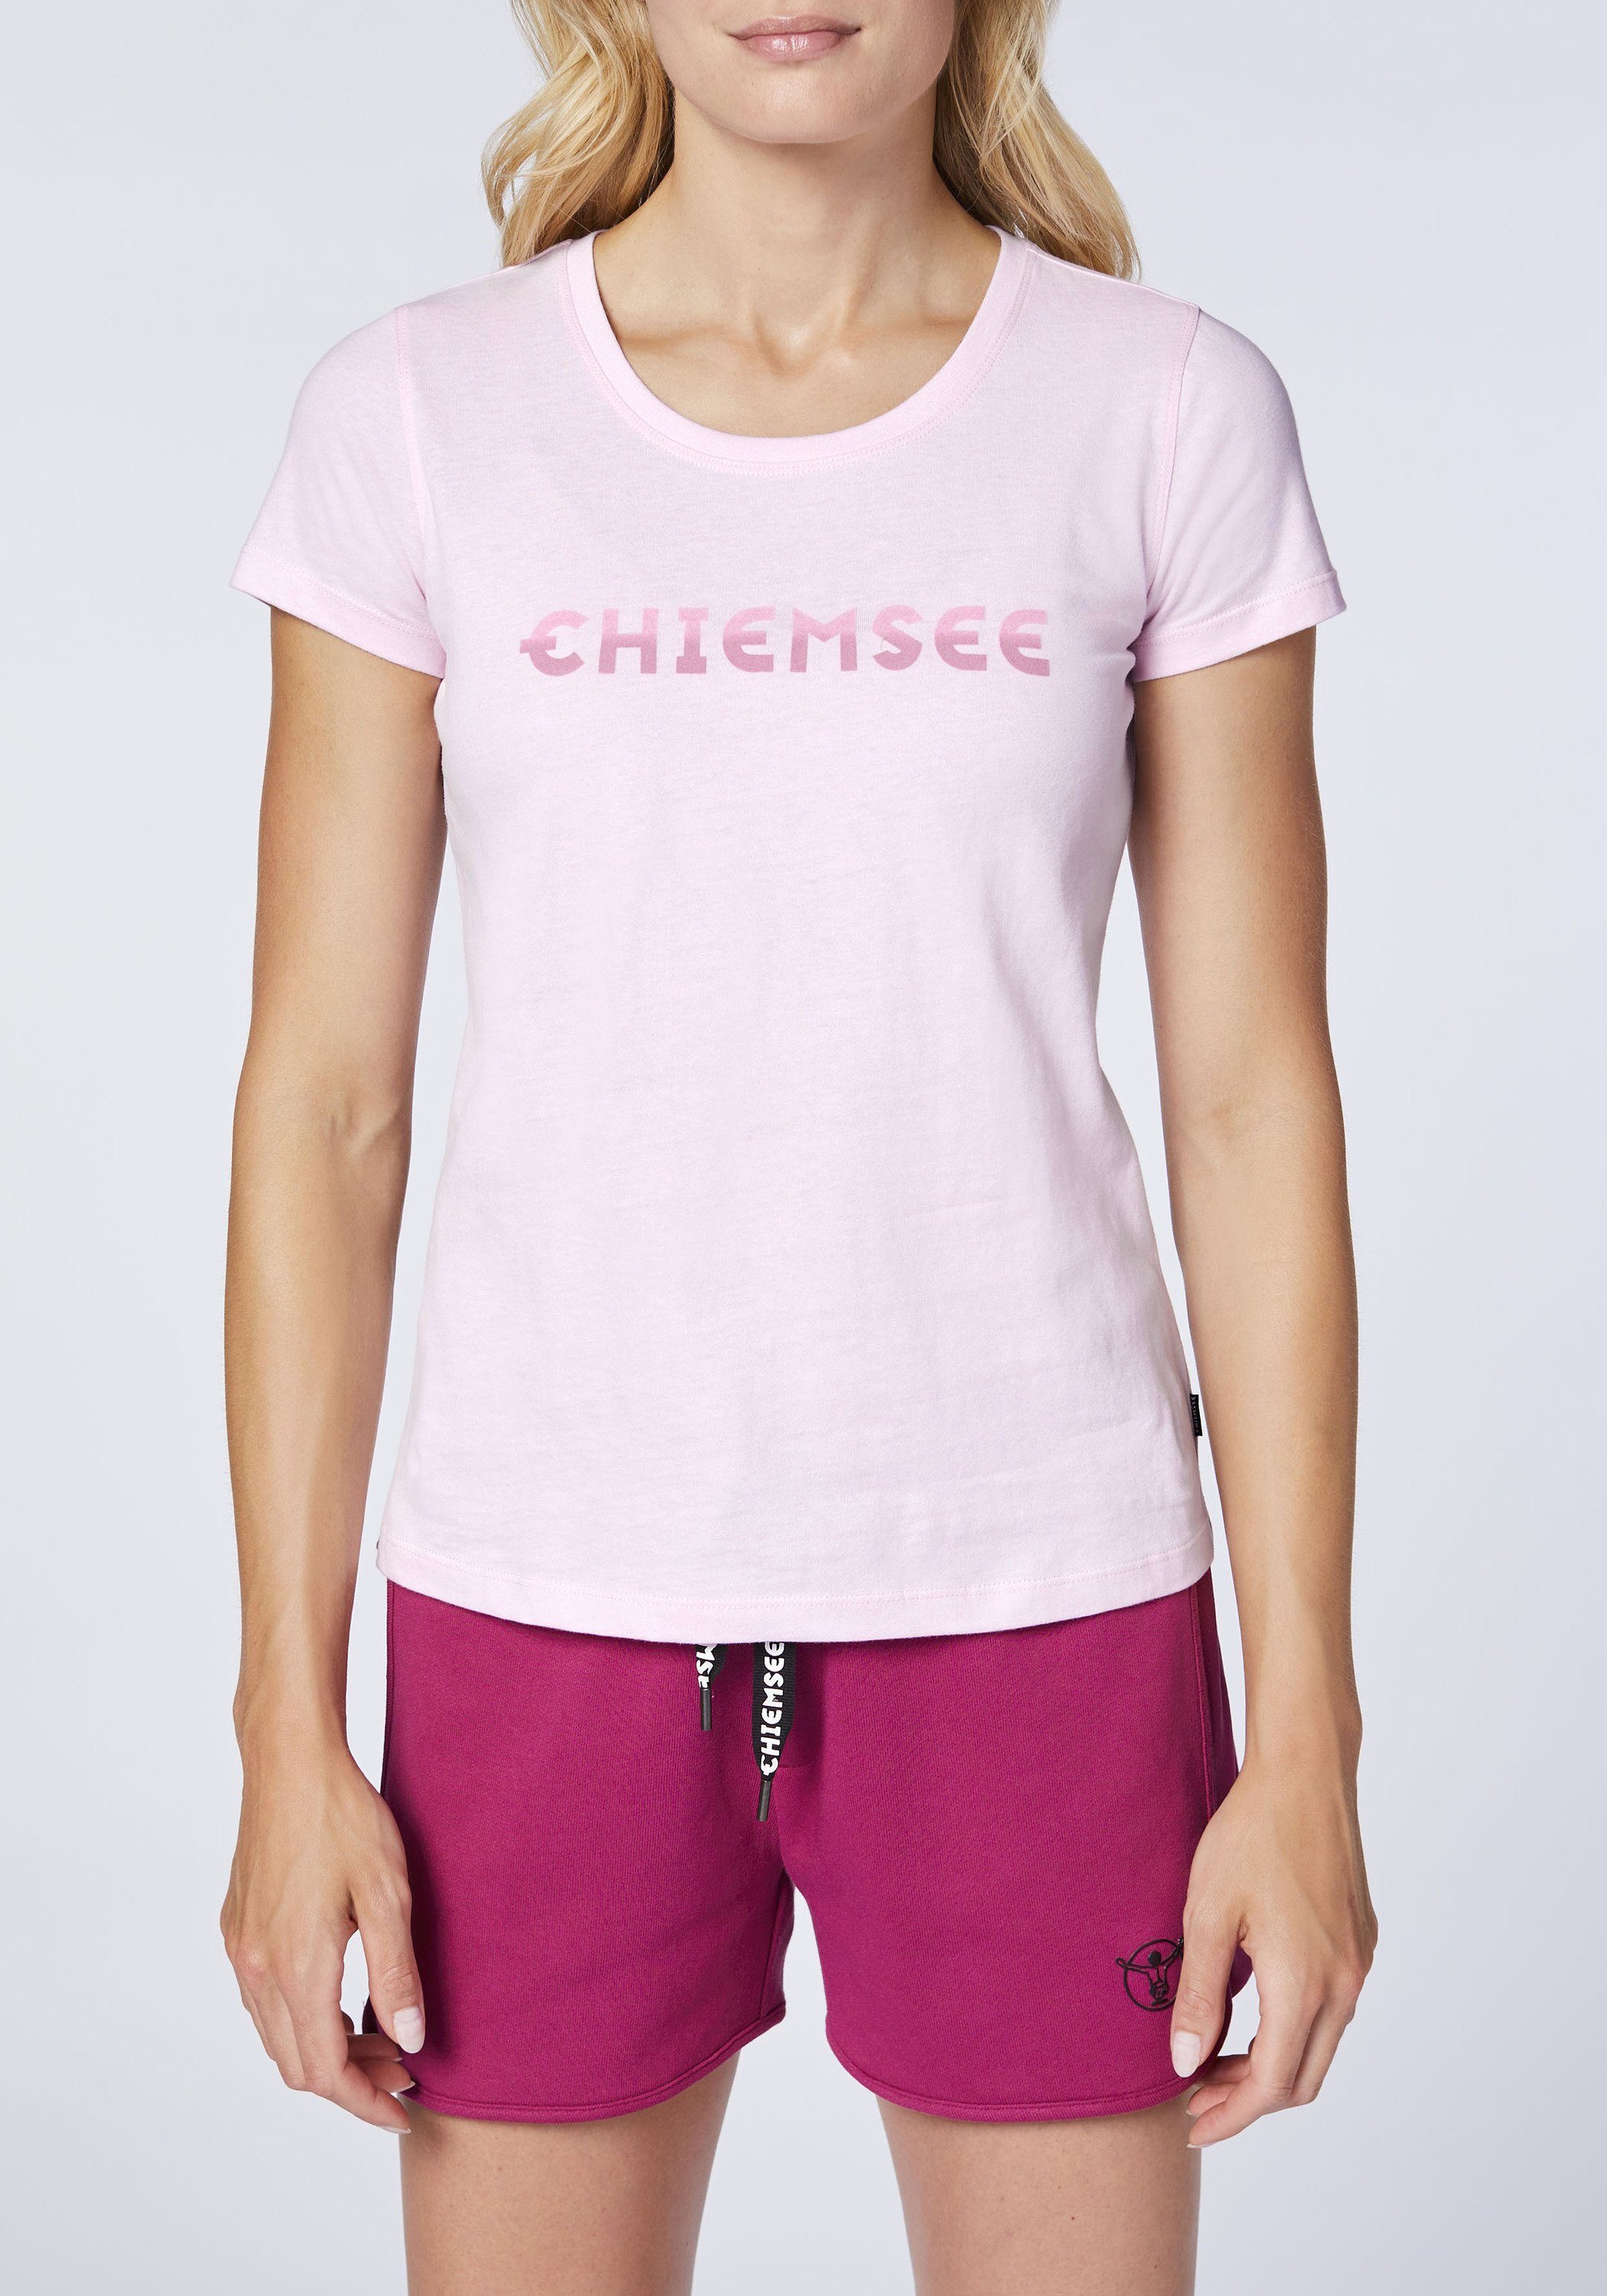 Print-Shirt Logo Lady Farbverlauf-Optik 1 T-Shirt Chiemsee Pink mit in